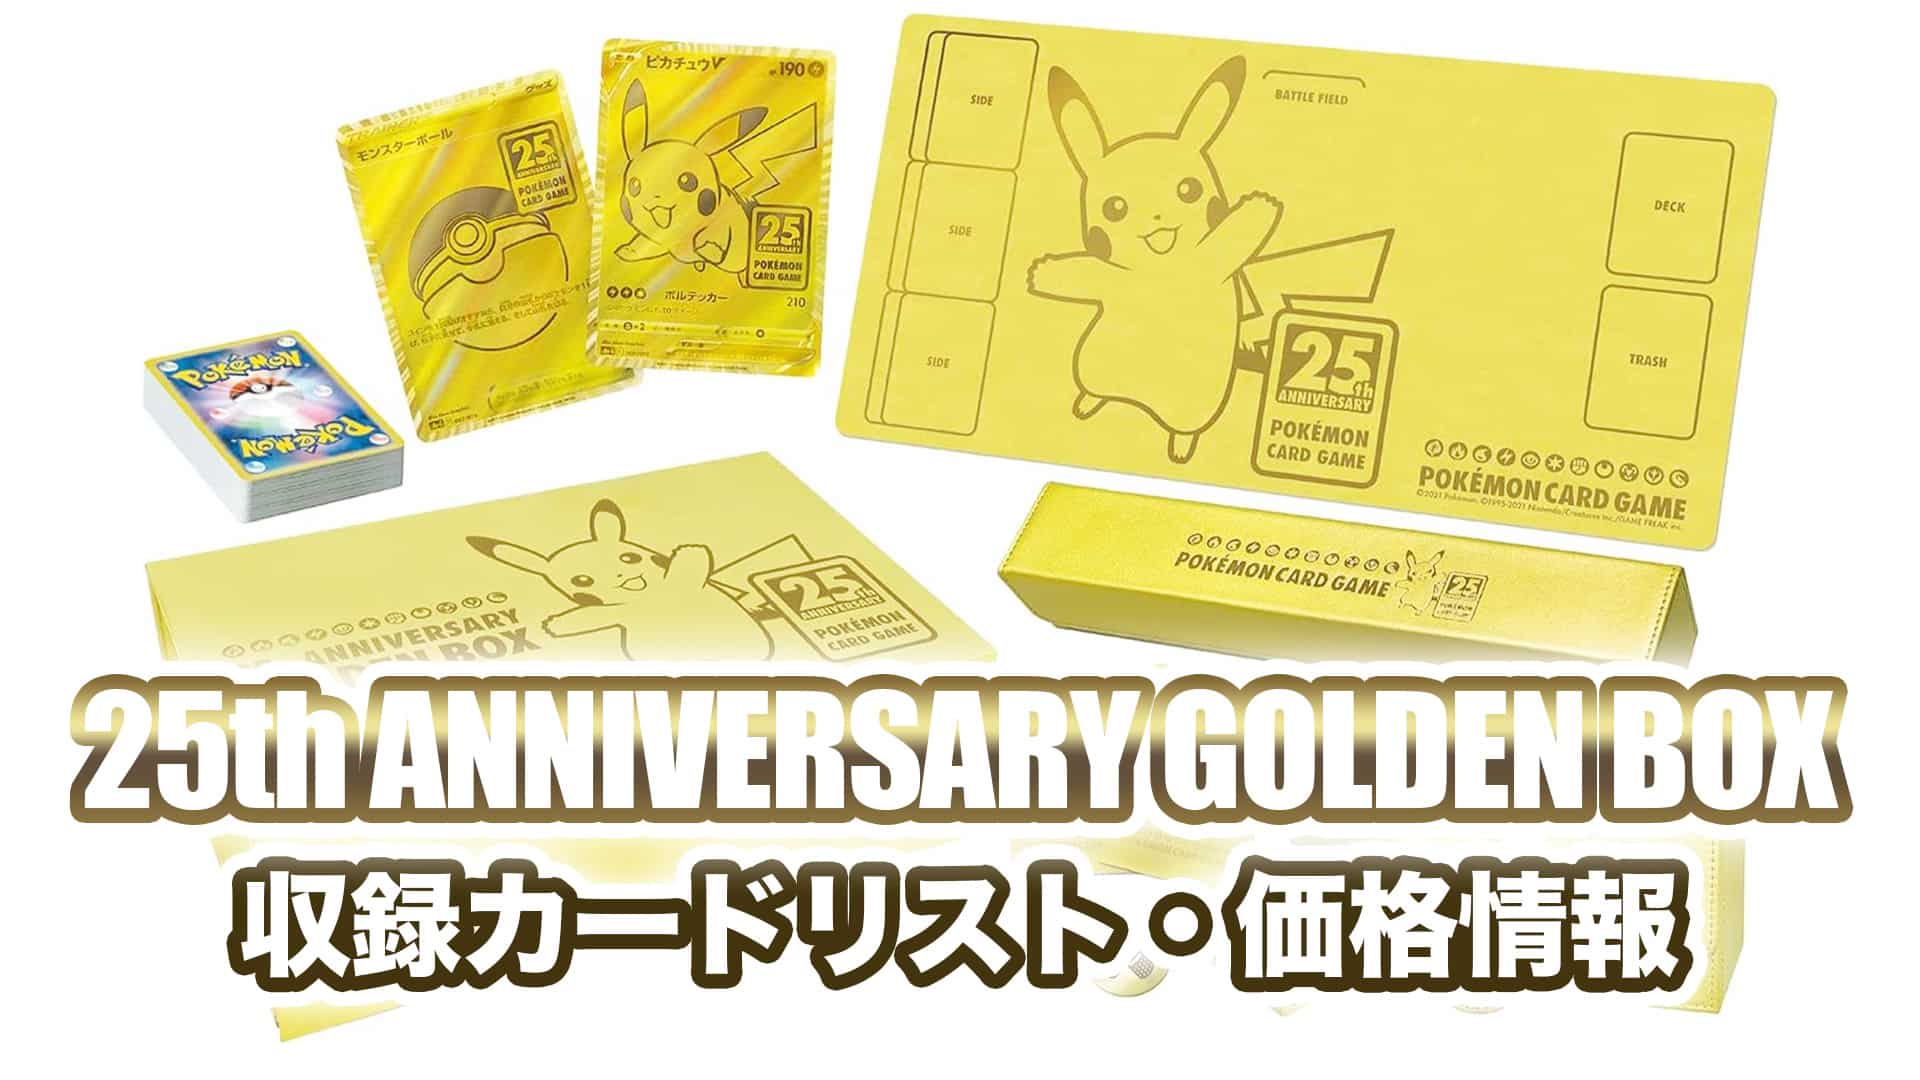 収録内容】『25th ANNIVERSARY GOLDEN BOX』価格・収録カードリスト【ポケカ】 | 第二倉庫メディア